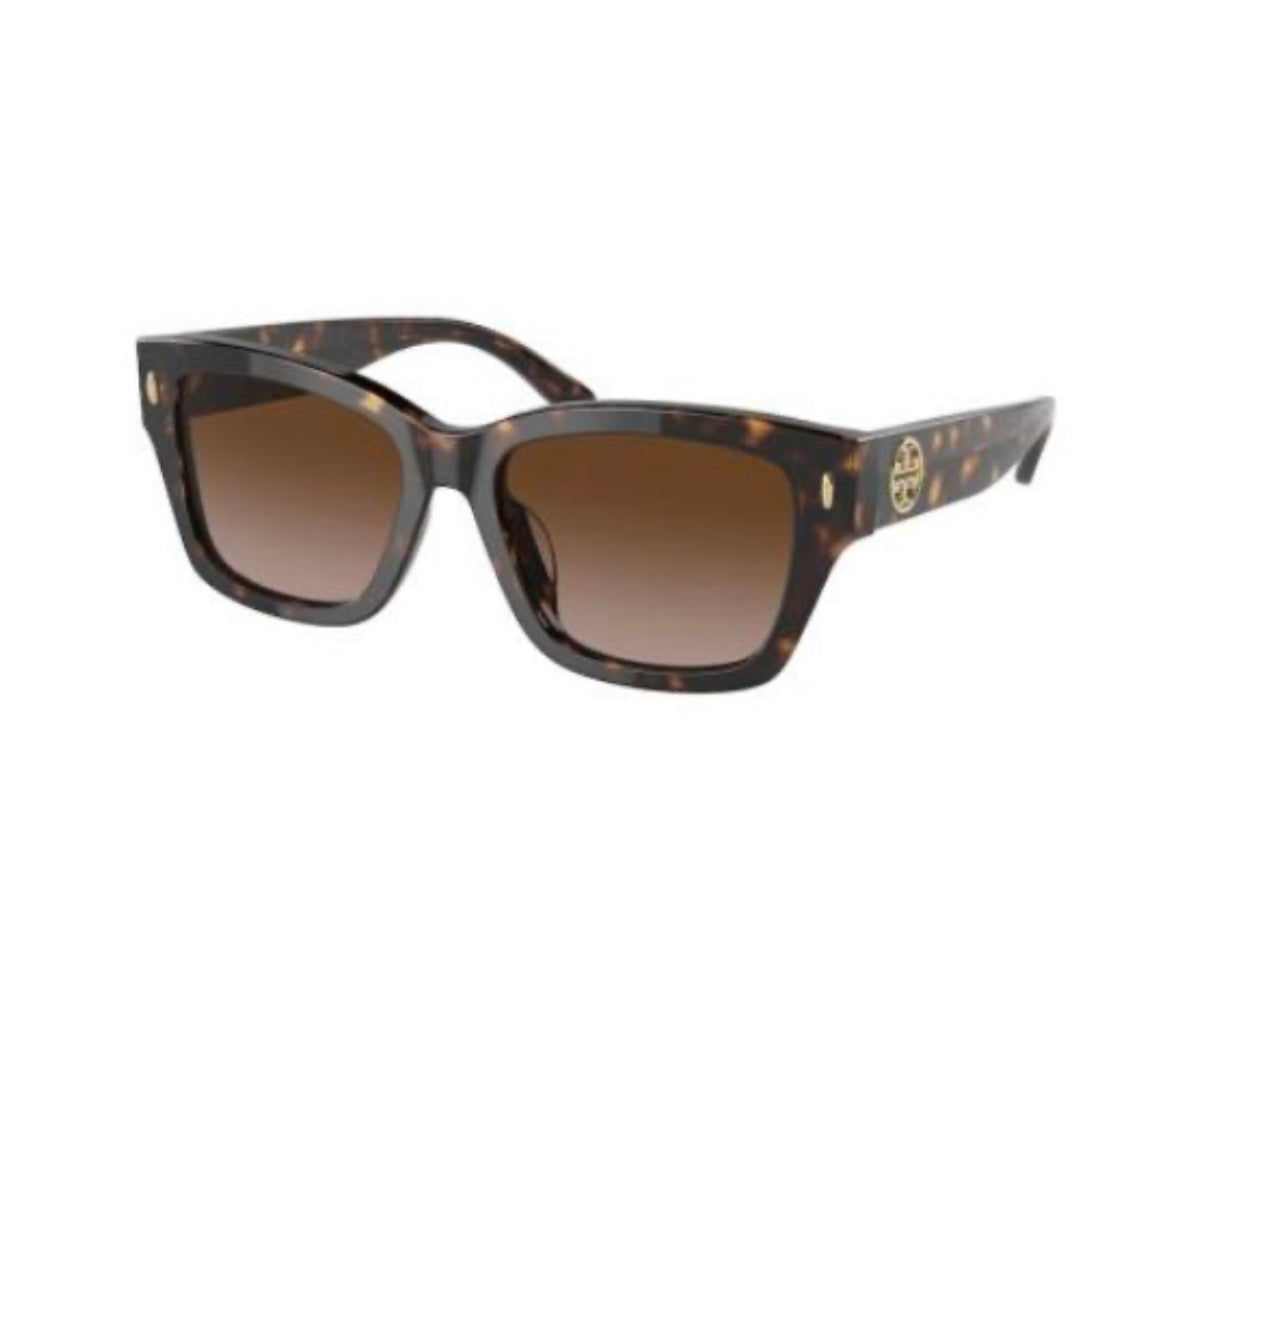 Tory Burch Women's sunglasses Dark Tortoise/Brown